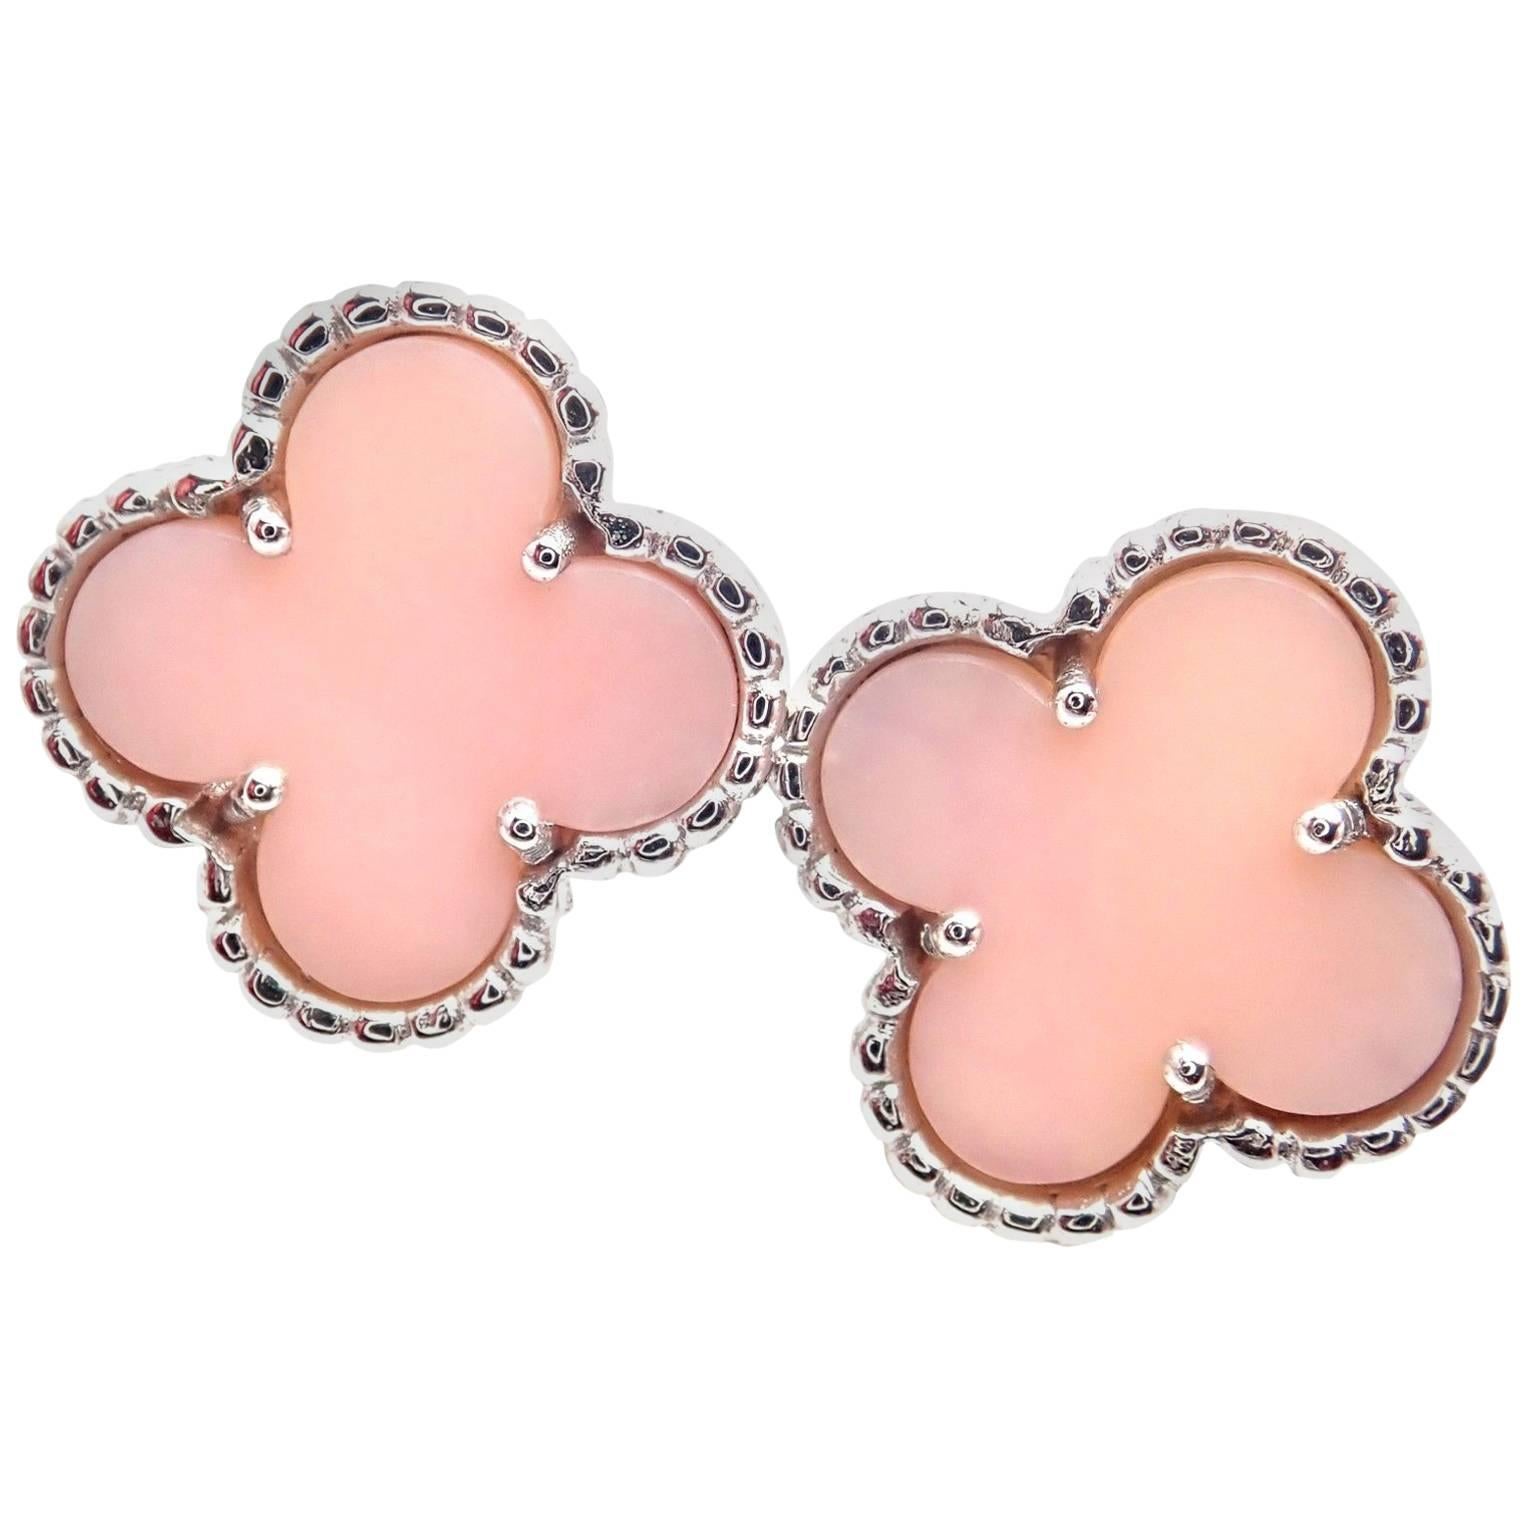 Van Cleef & Arpels Vintage Alhambra Pink Opal White Gold Earrings